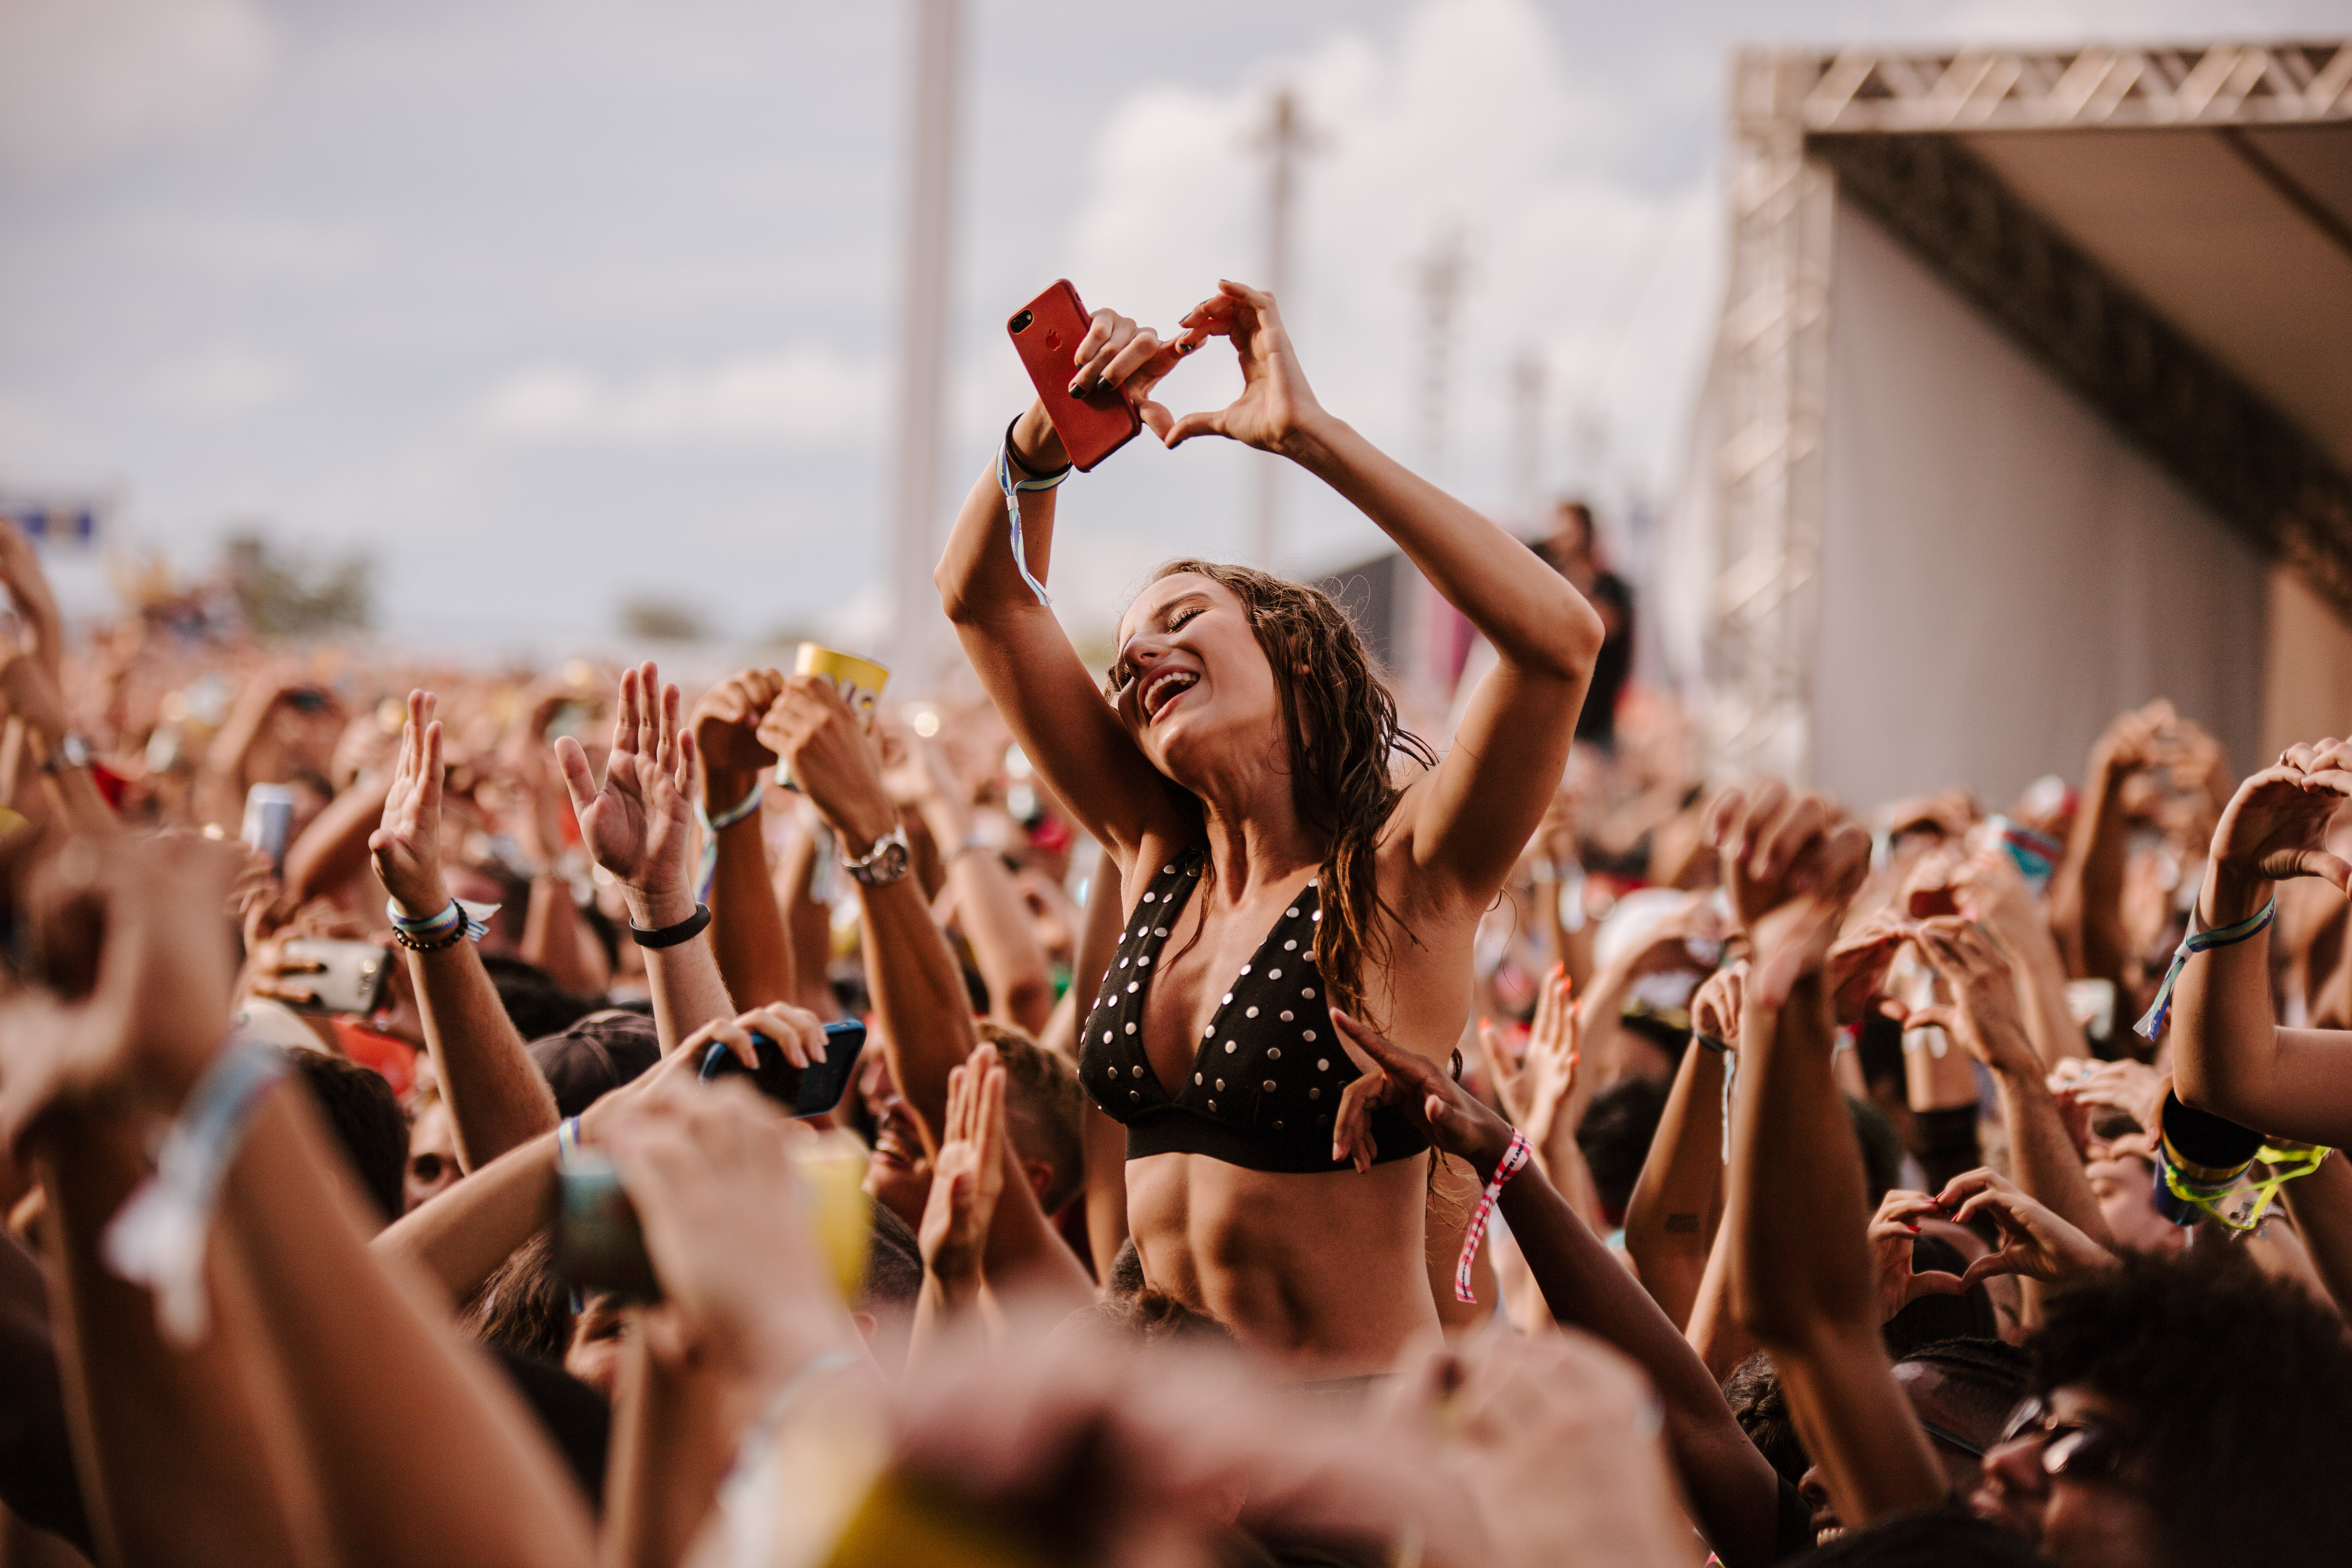 Jovem mulher se diverte em meio a multidão no Festival Planeta Brasil. Ela se destaca em meio a multidão fazendo um coração com as mãos enquanto assiste ao show.